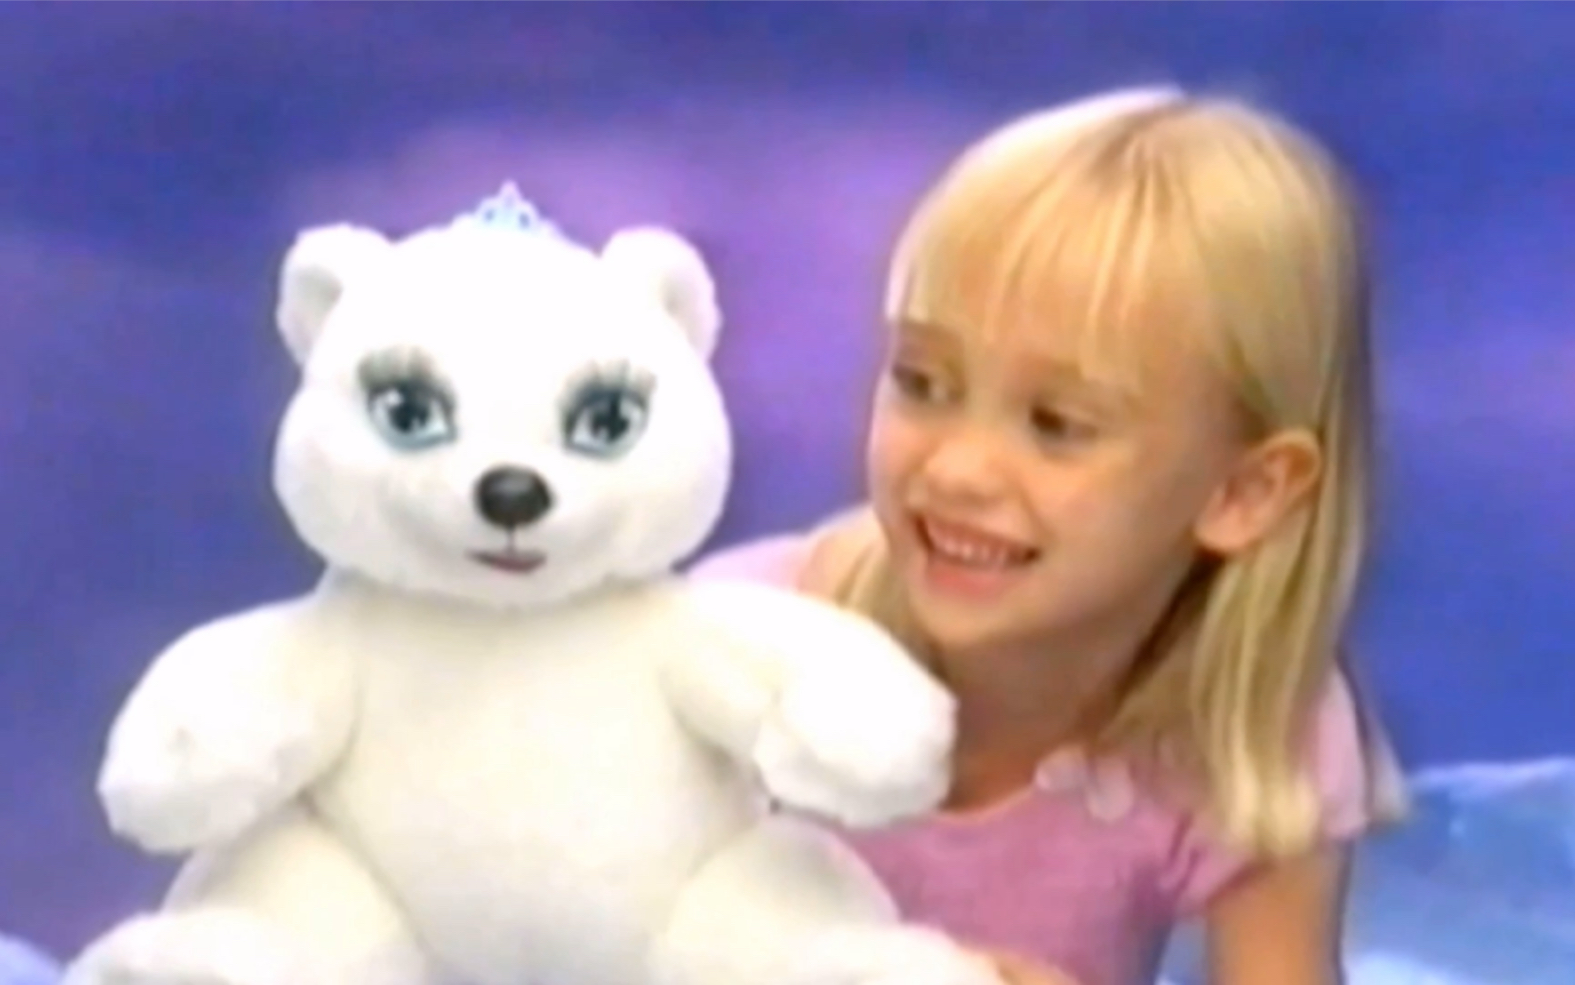 【芭比广告】芭比魔幻飞马小北极熊雪花玩偶广告芭比魔幻飞马电影